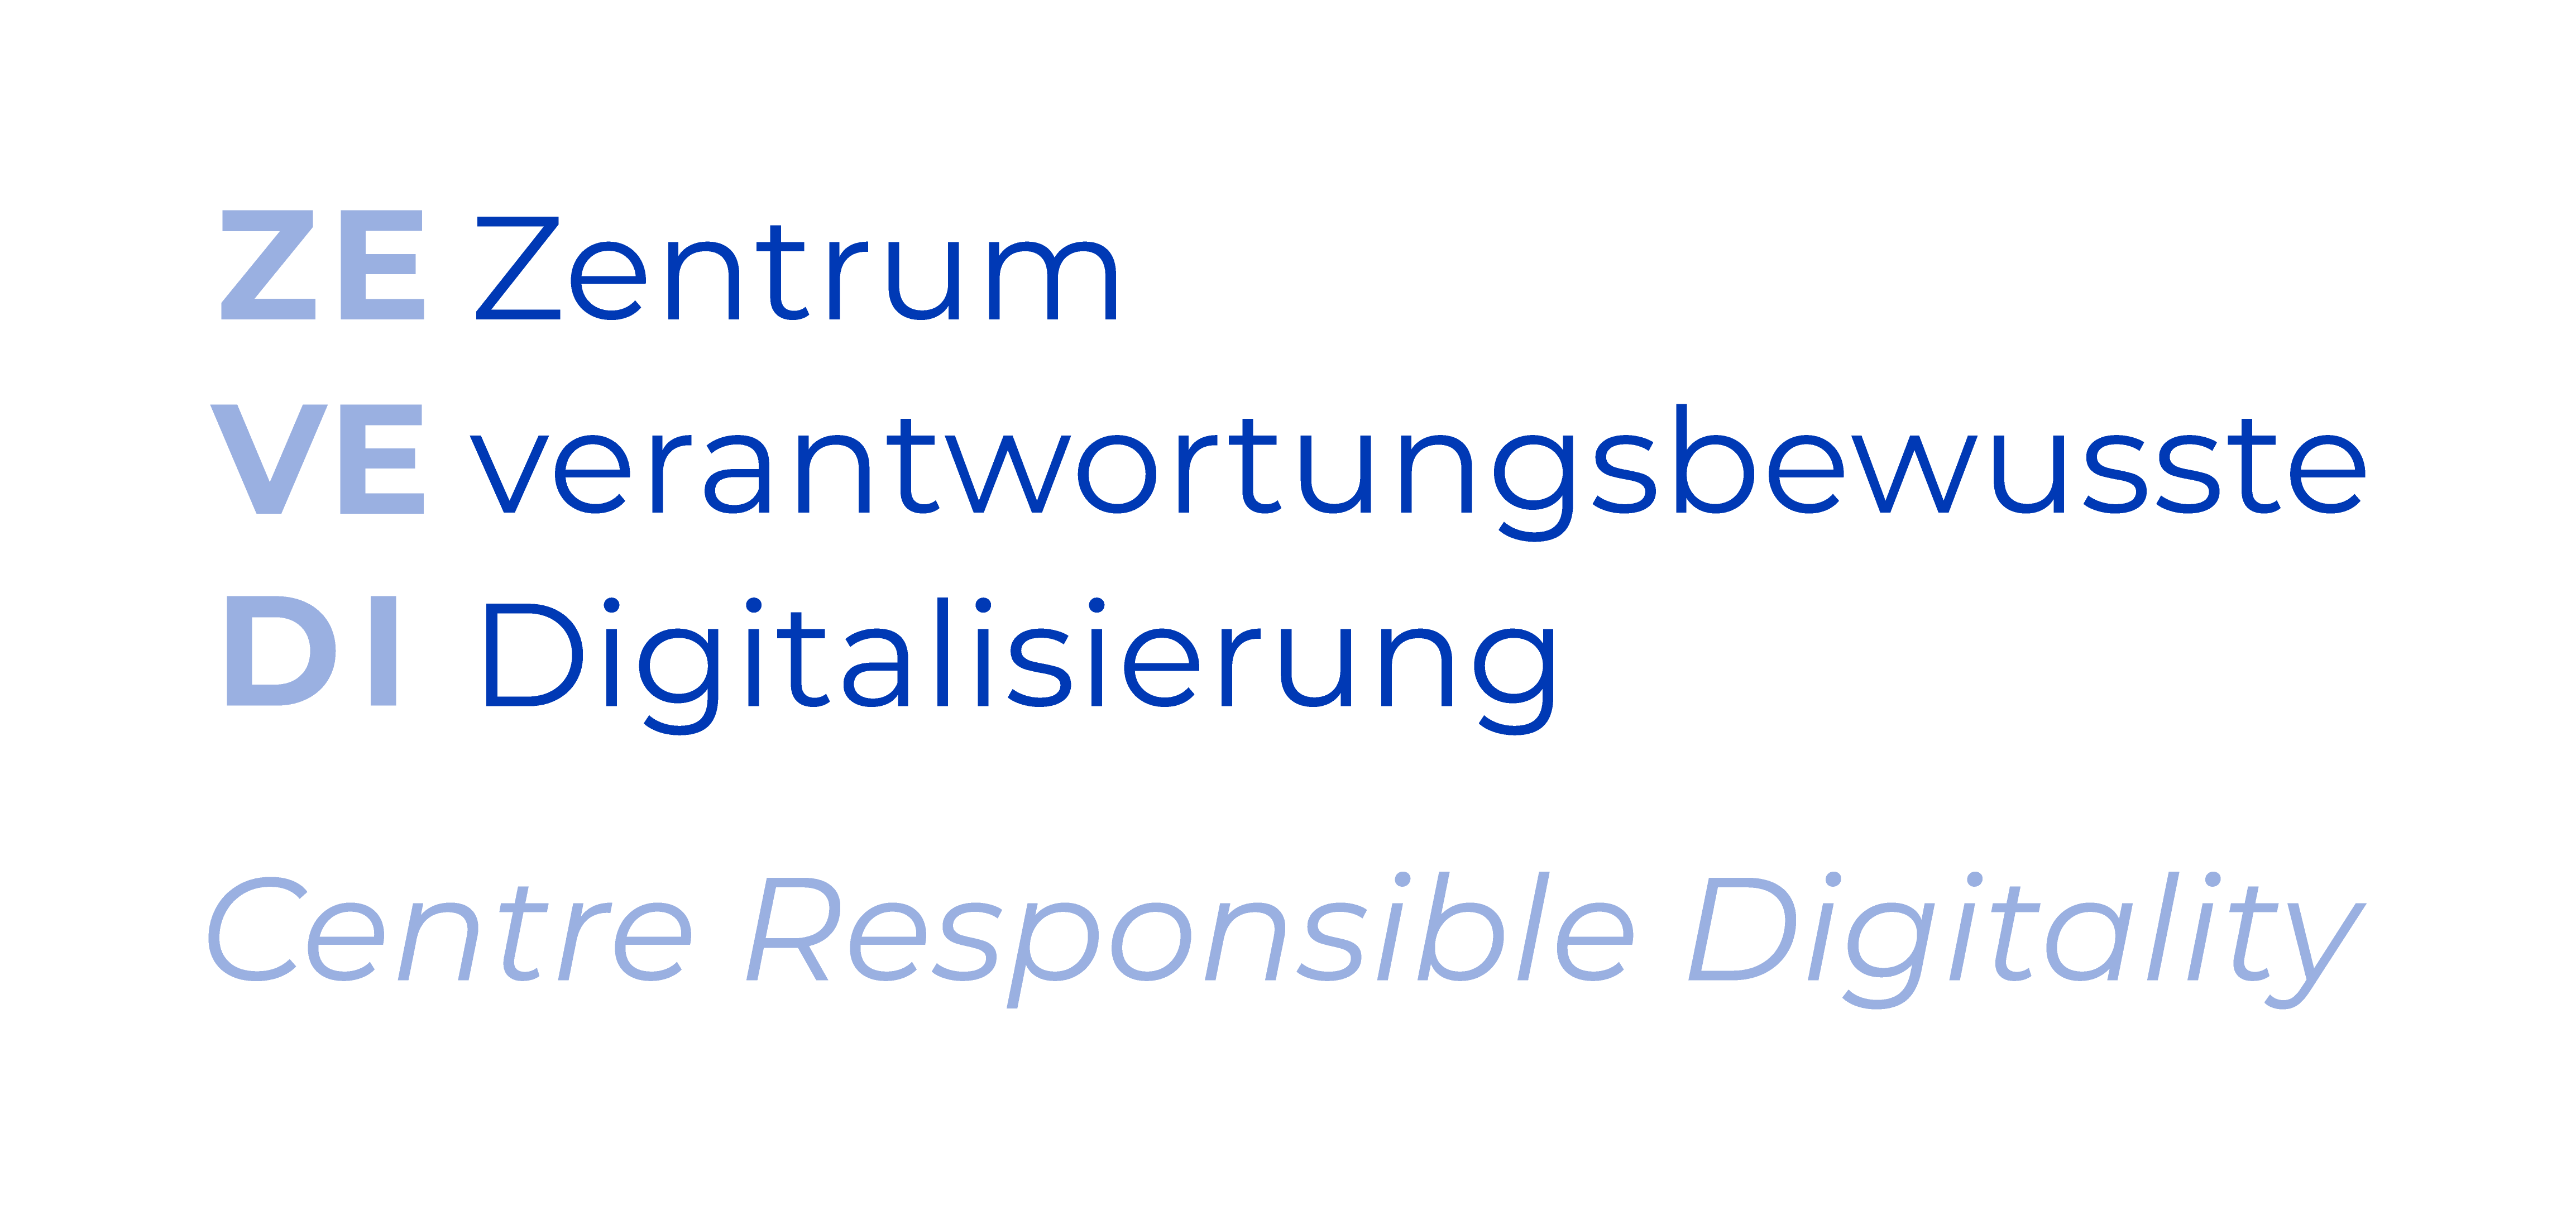 Das Logo des Zentrum verantwortungsbewusste Digitalisierung (ZEVEDI)